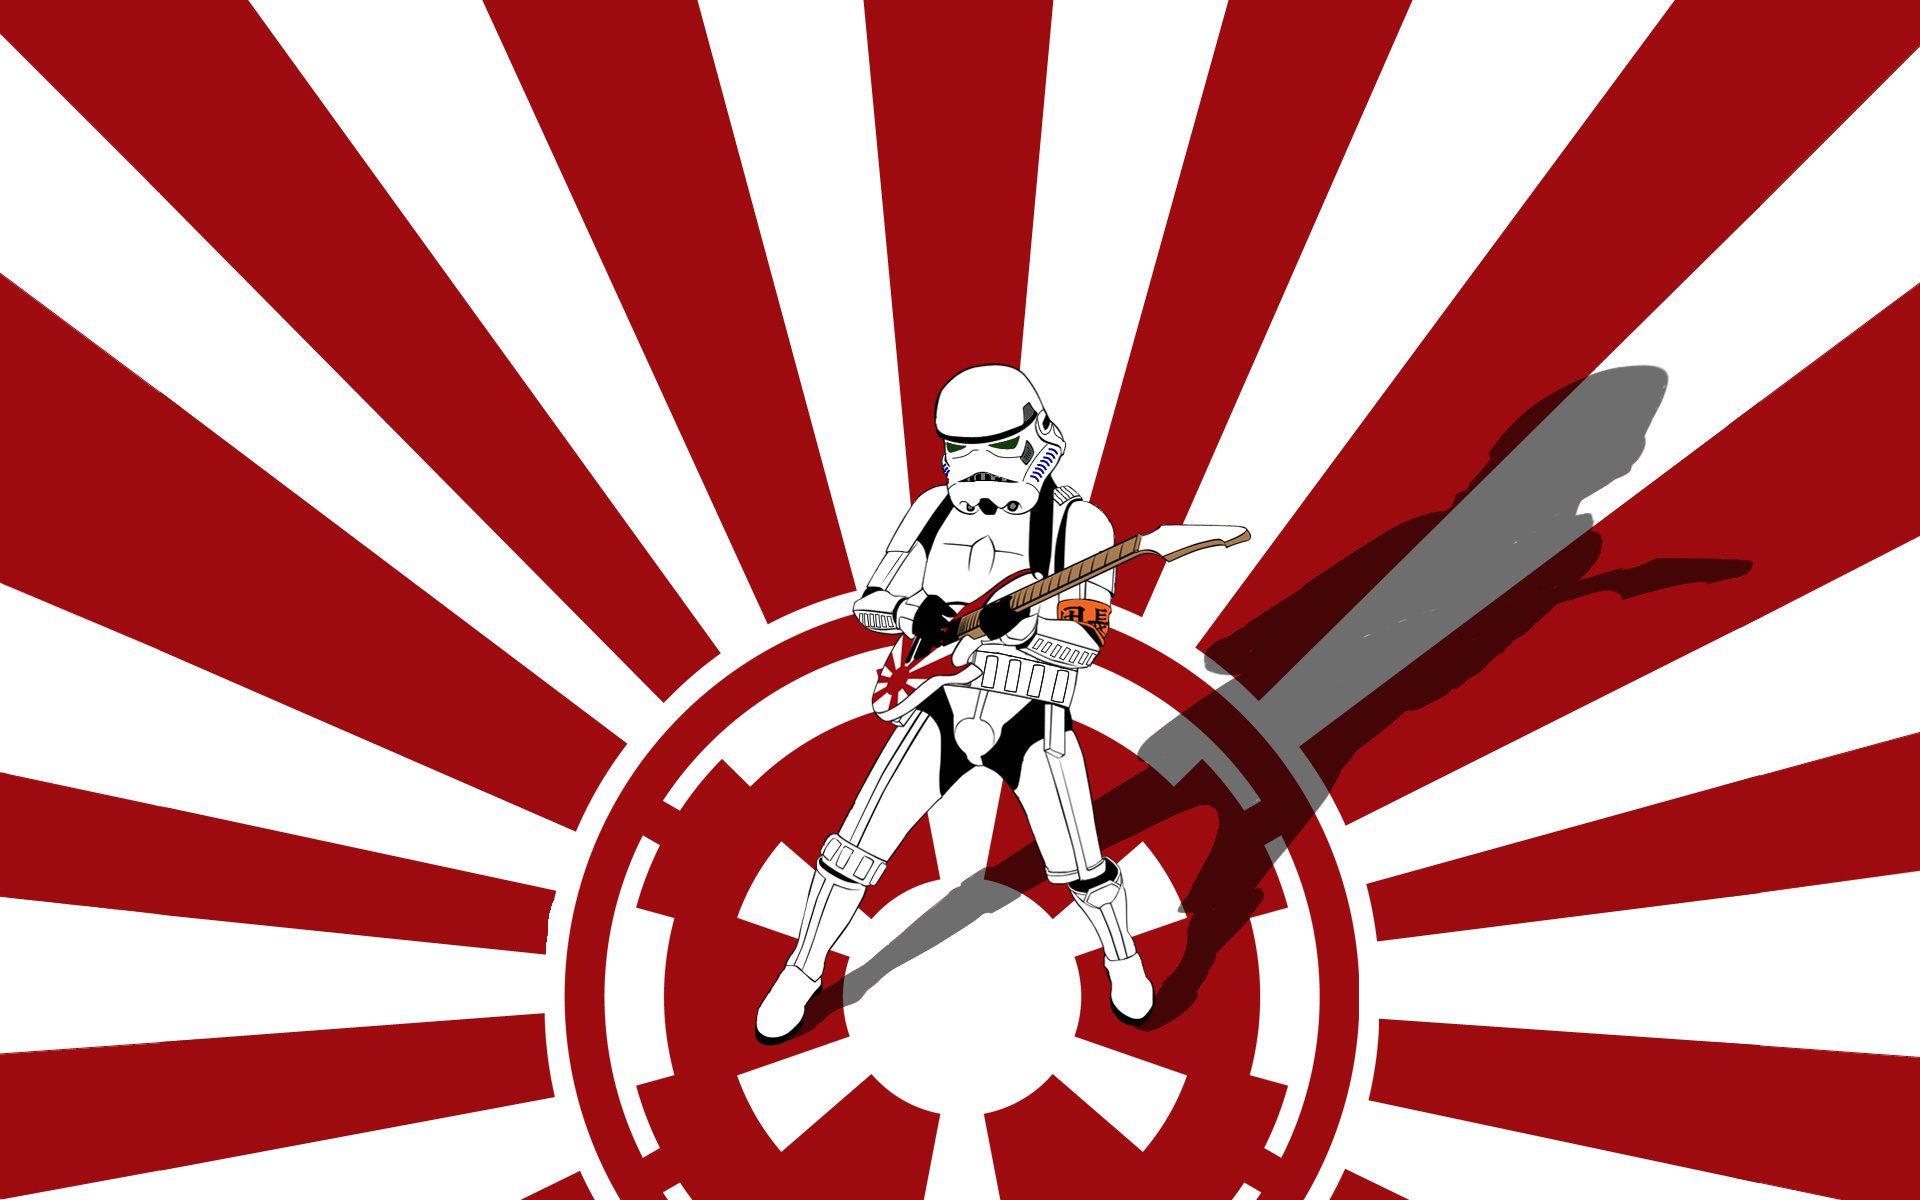 Star Wars, stormtroopers, guitars, Galactic Empire Wallpaper / WallpaperJam.com